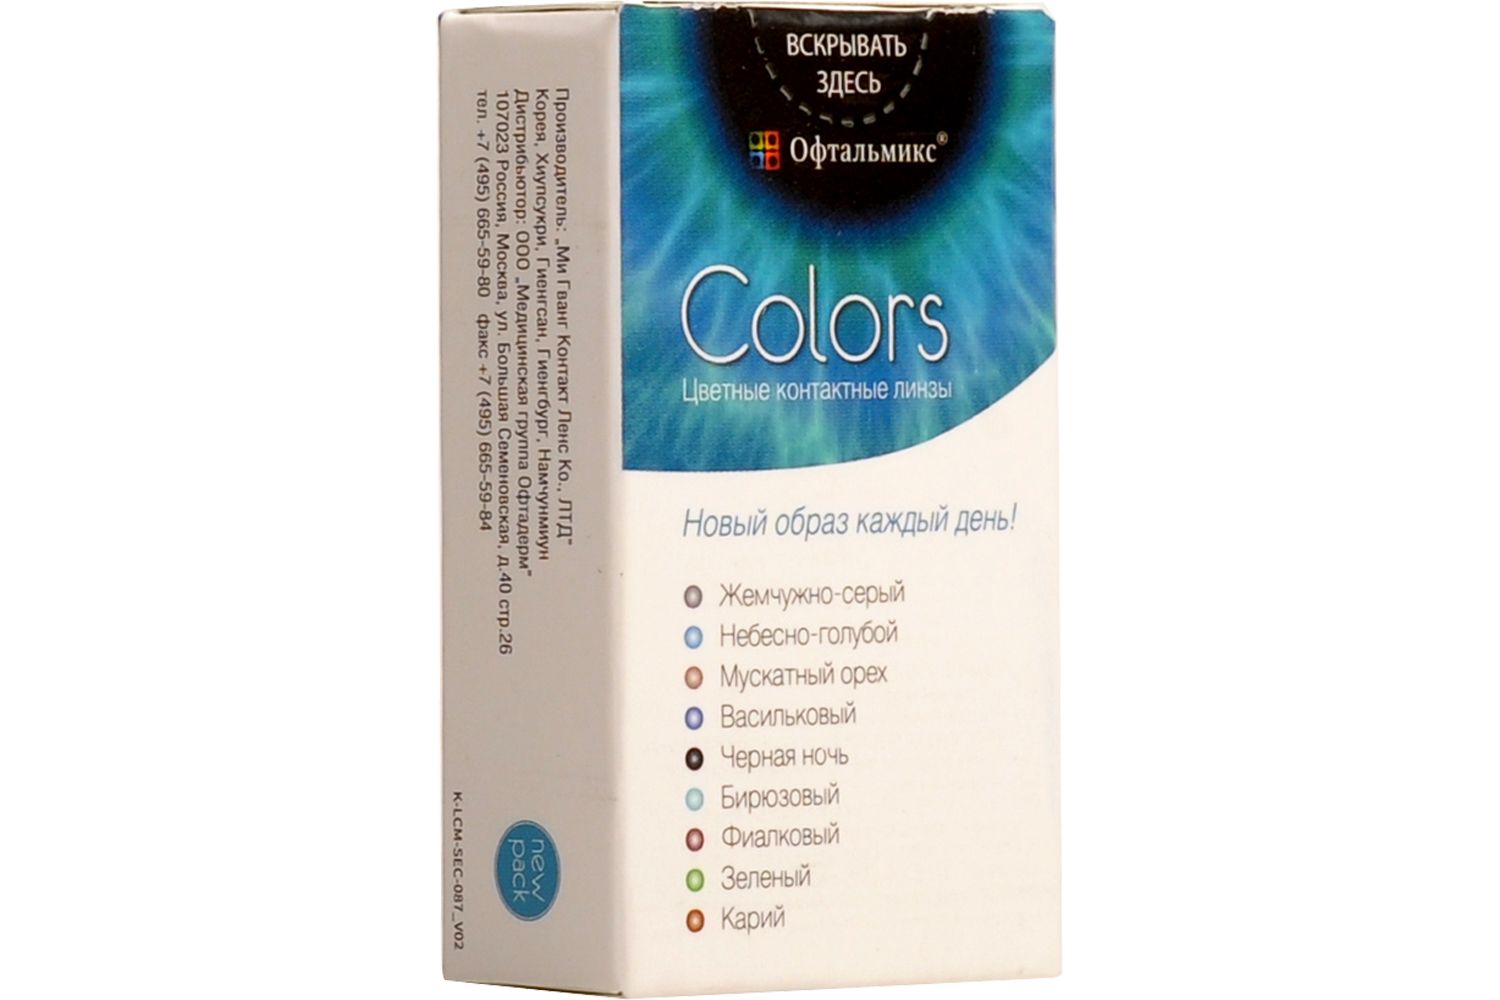 Купить Colors 2 линзы, Цветные контактные линзы Офтальмикс Colors, 2 шт. PWR -0, 50, R 8.6, Olive